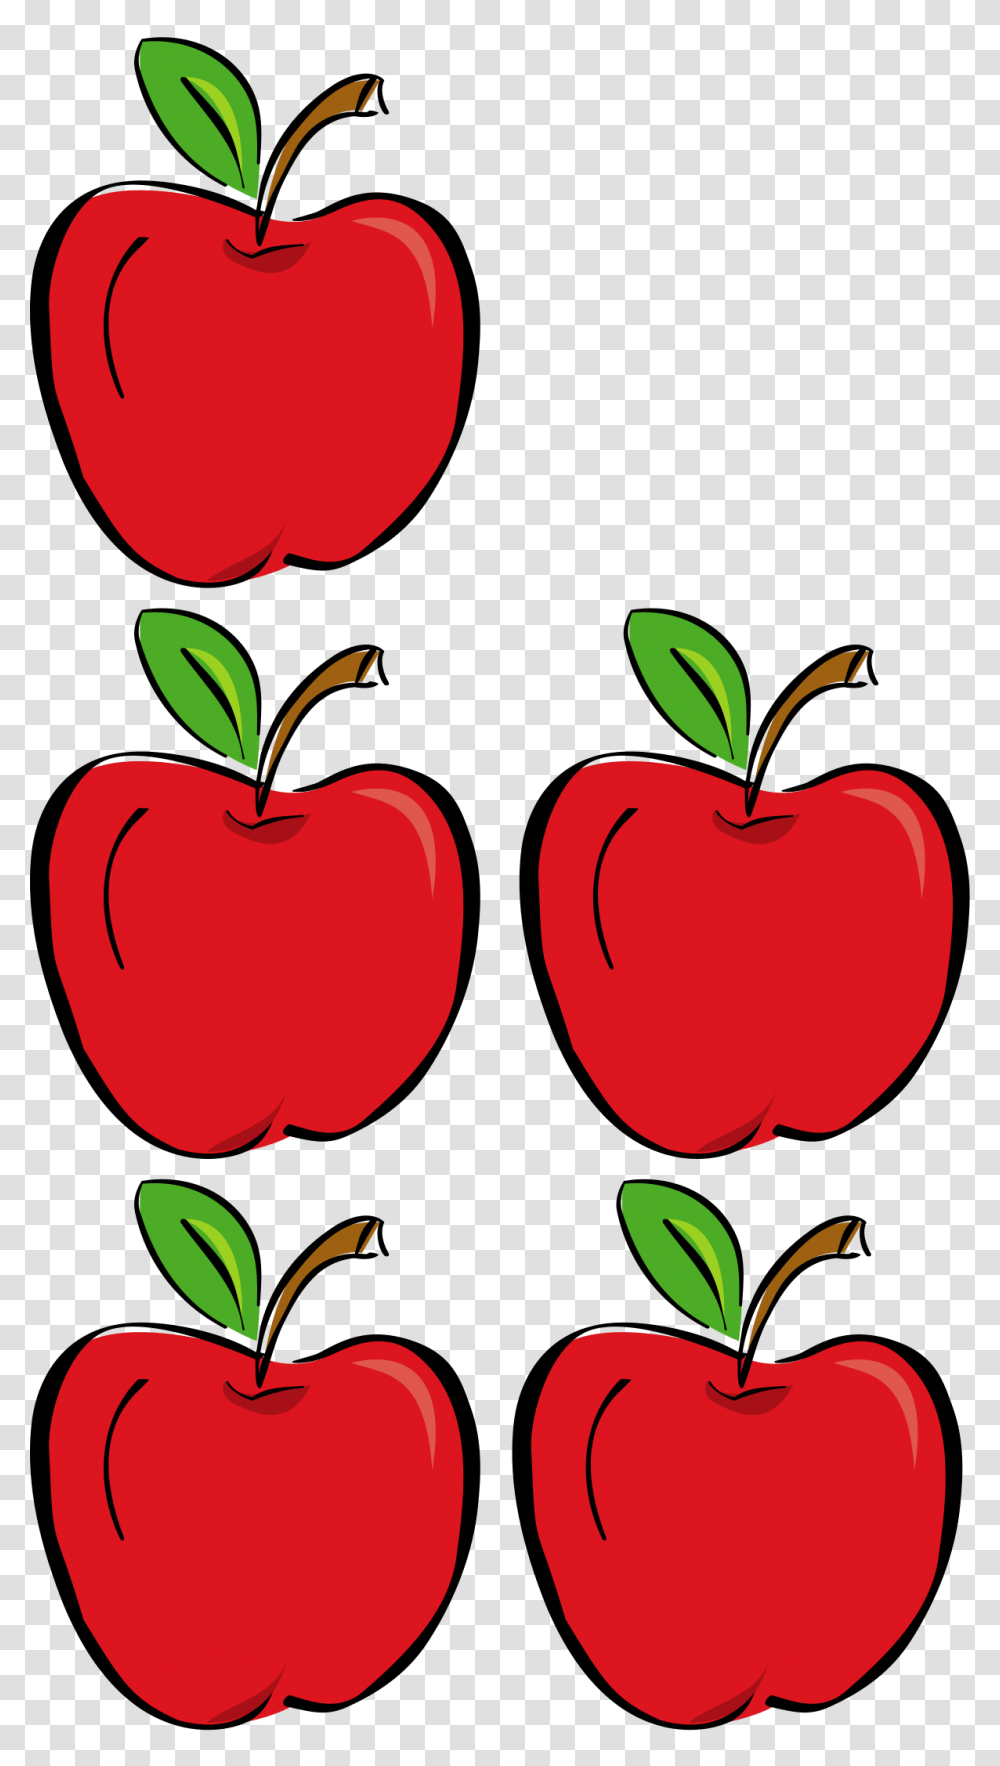 Addition, Plant, Fruit, Food, Apple Transparent Png